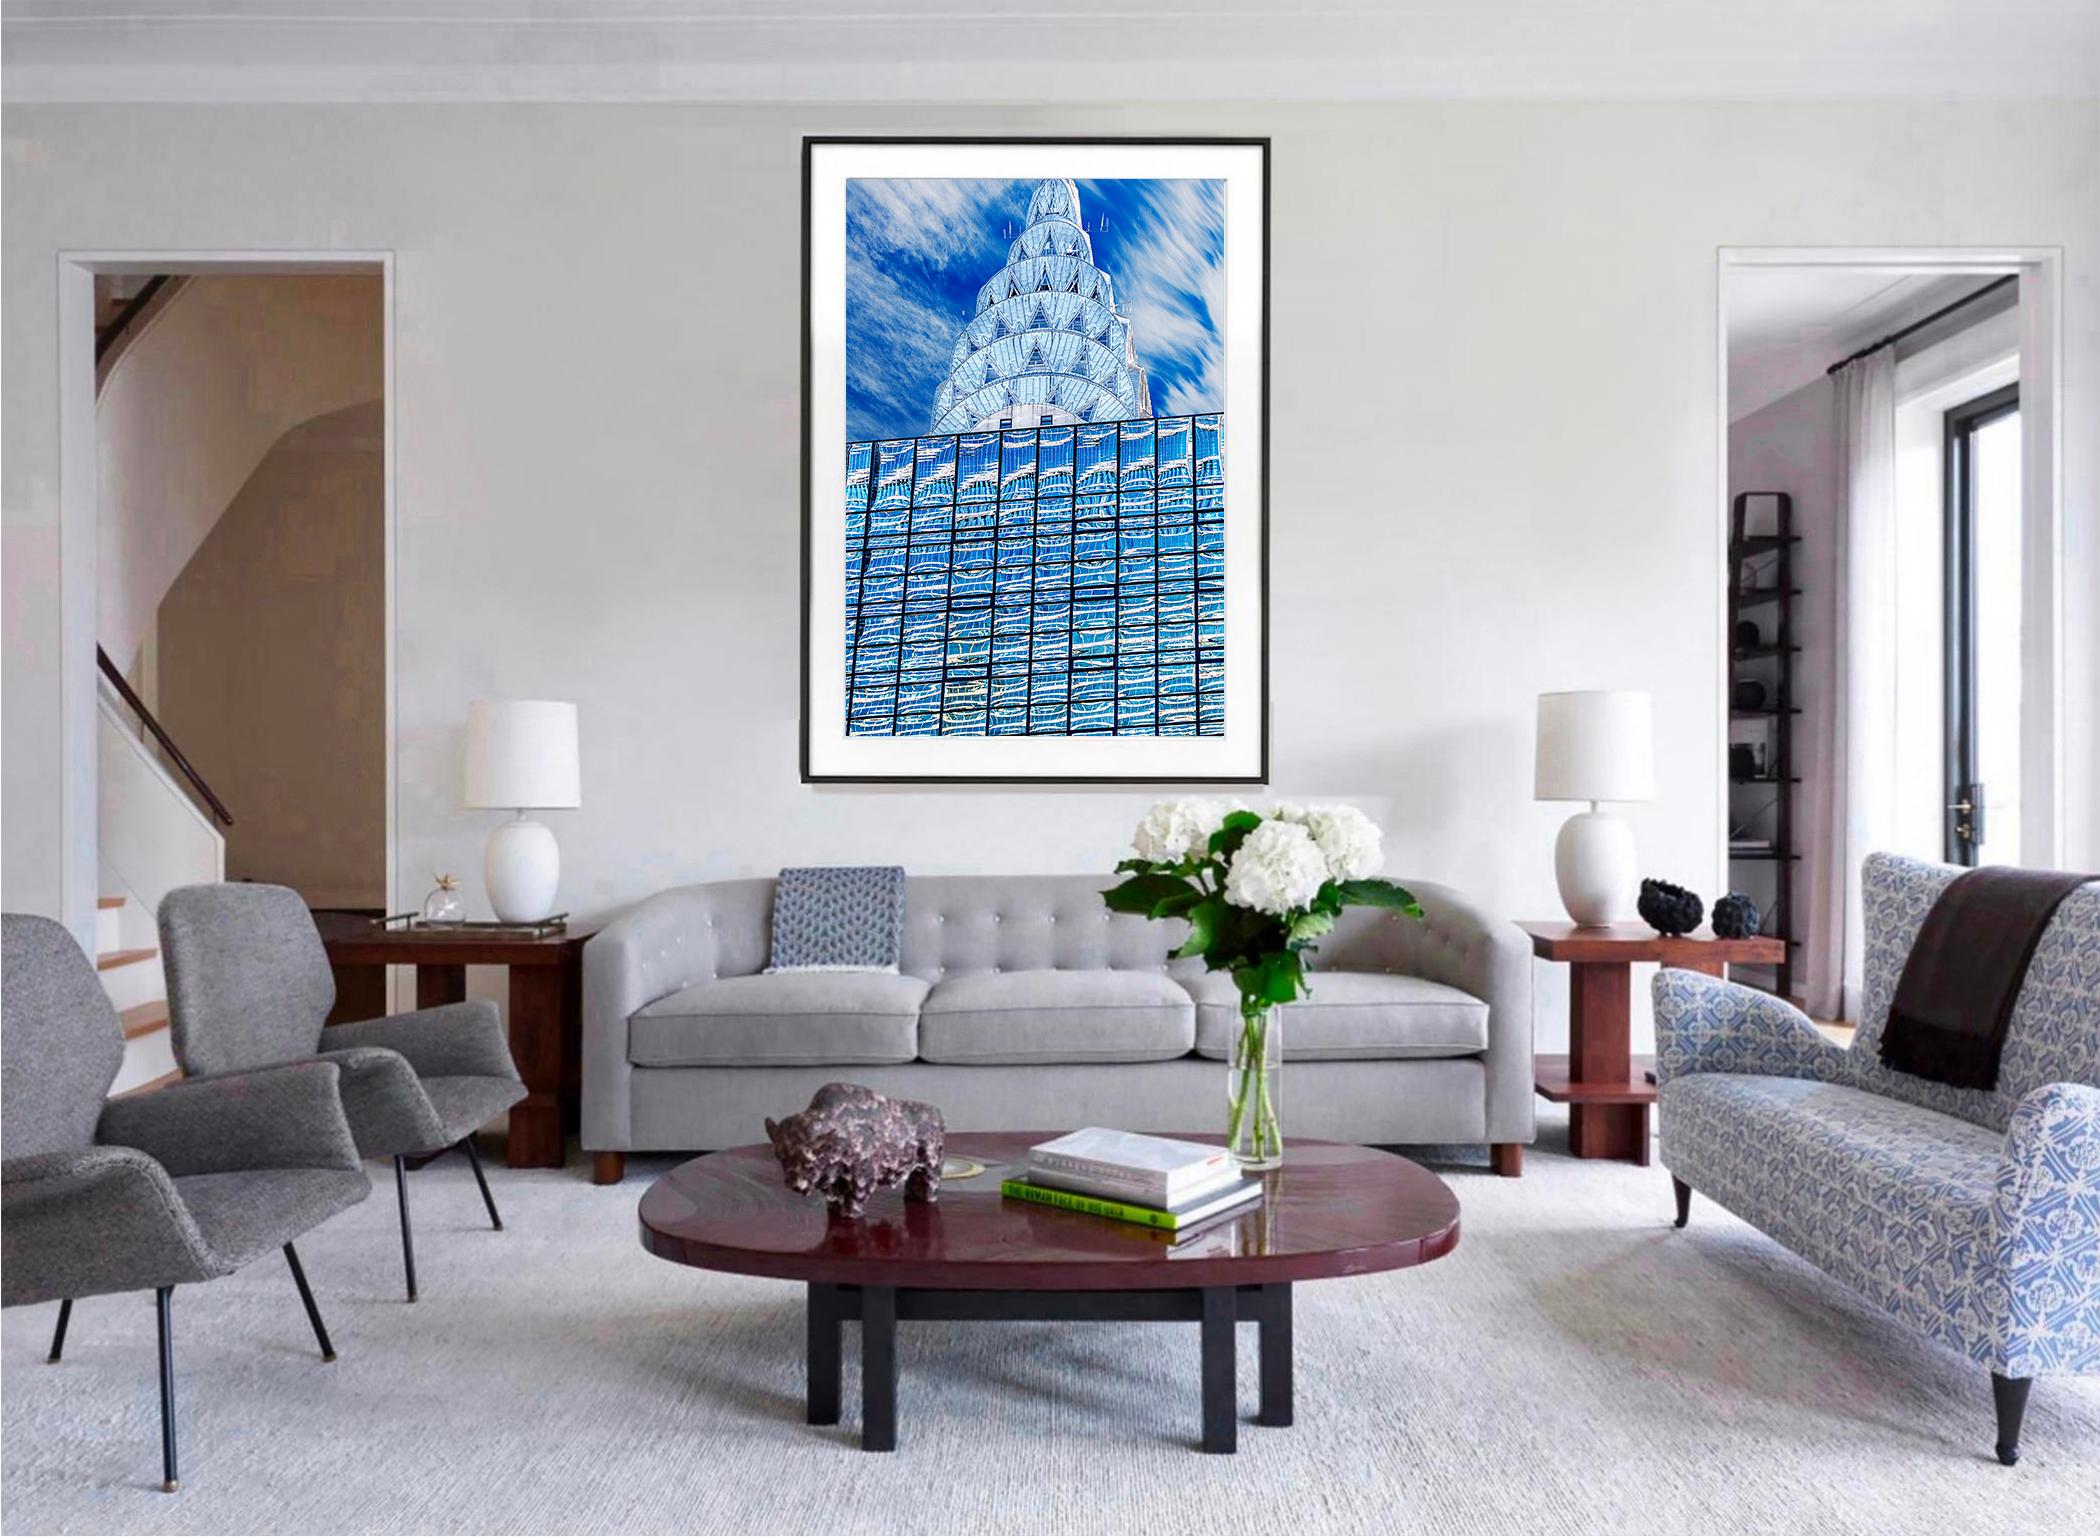 Chrysler-Gebäudeplatte  Art déco-Architektur in Blau und Silber (Geometrische Abstraktion), Photograph, von Mitchell Funk